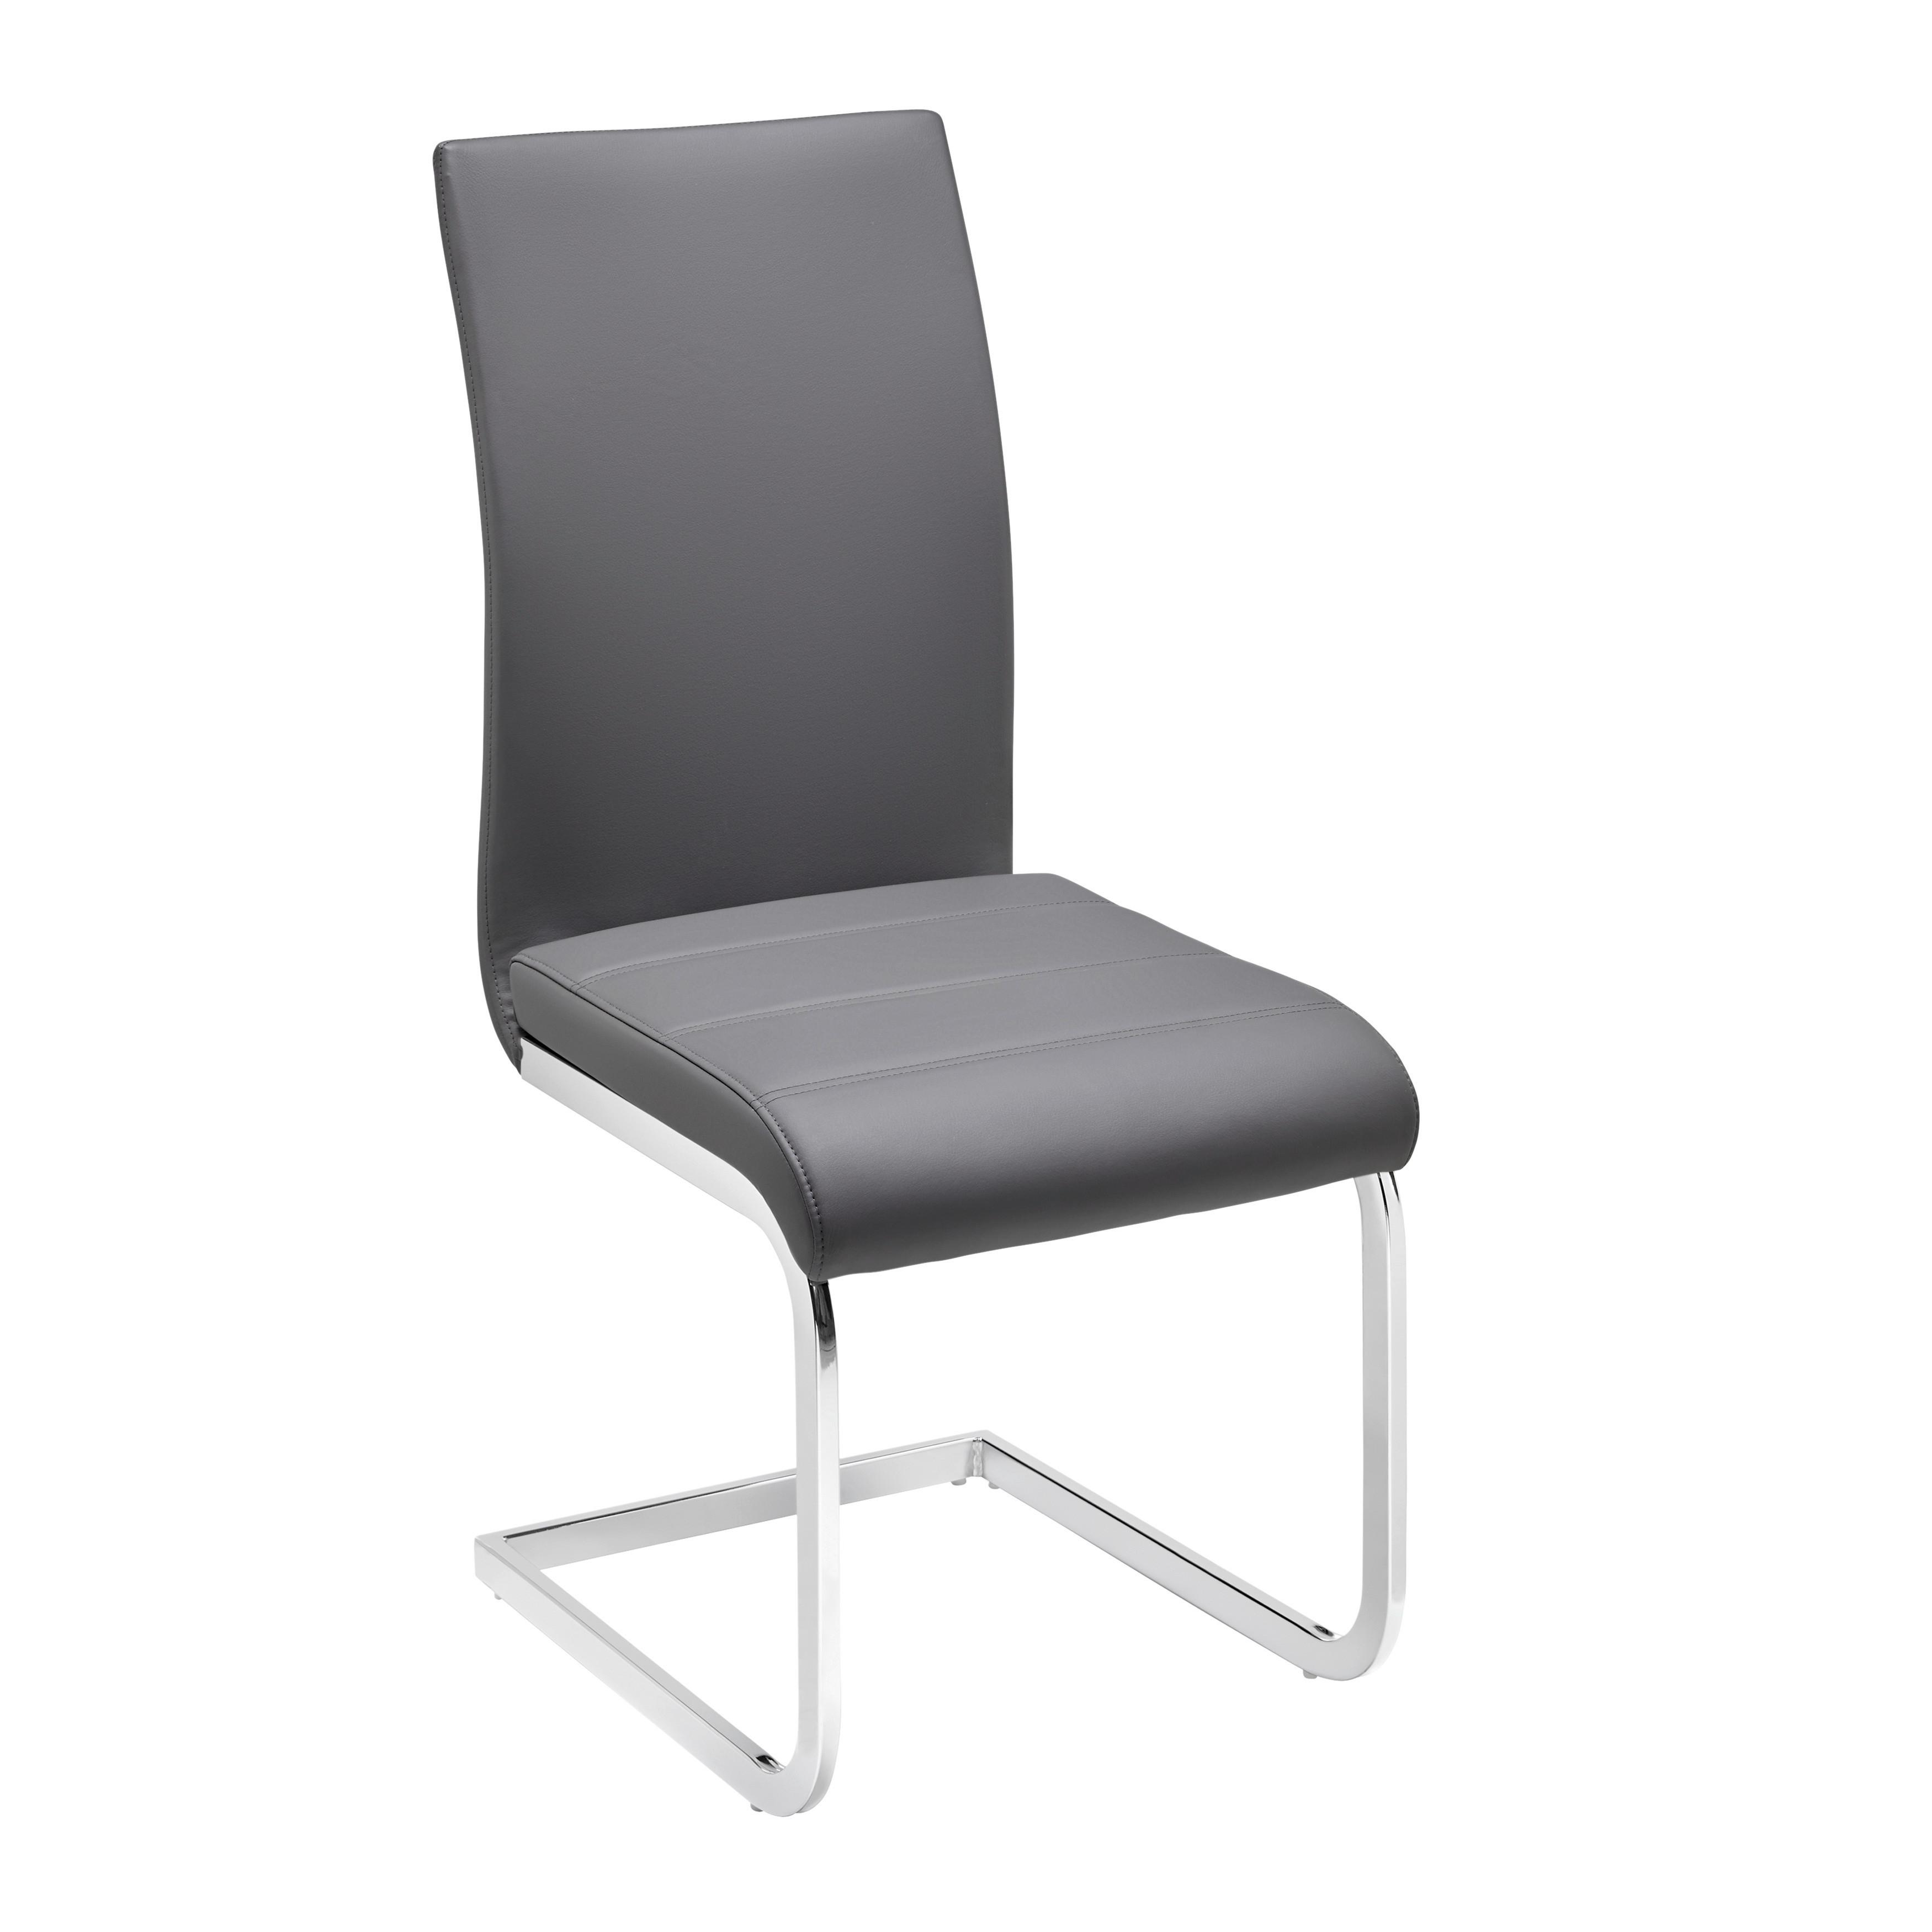 Židle Z Koženky Tanja - šedá/barvy chromu, Moderní, kov/dřevo (42/97/55cm) - P & B